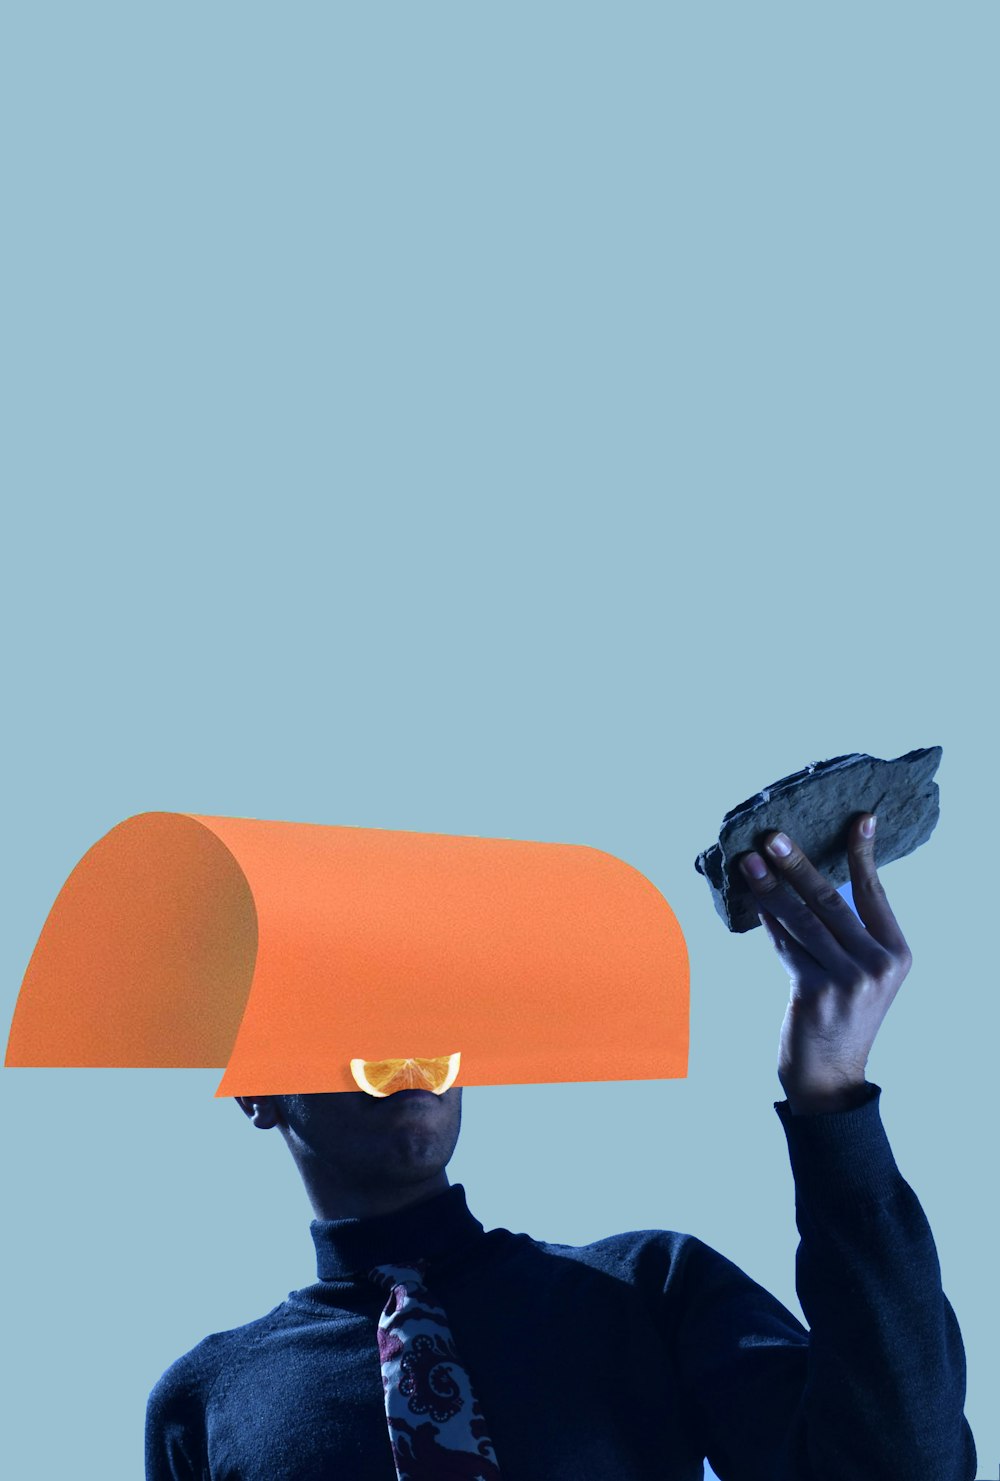 personne tenant un cône orange avec un crâne humain noir